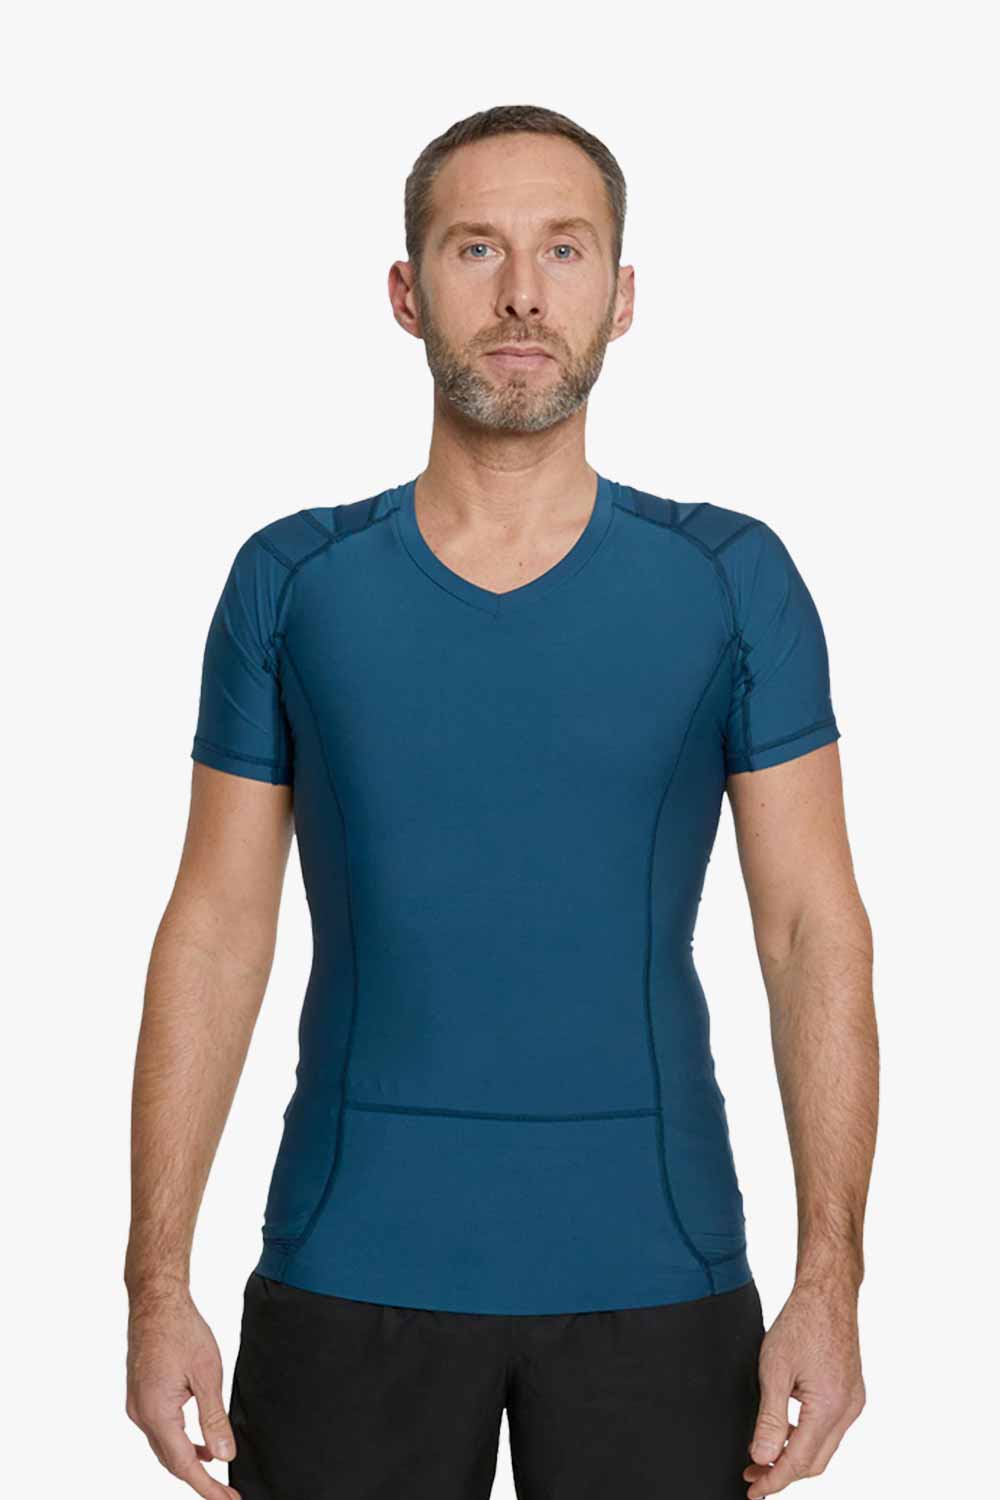 blå posture shirt til mænd set forfra